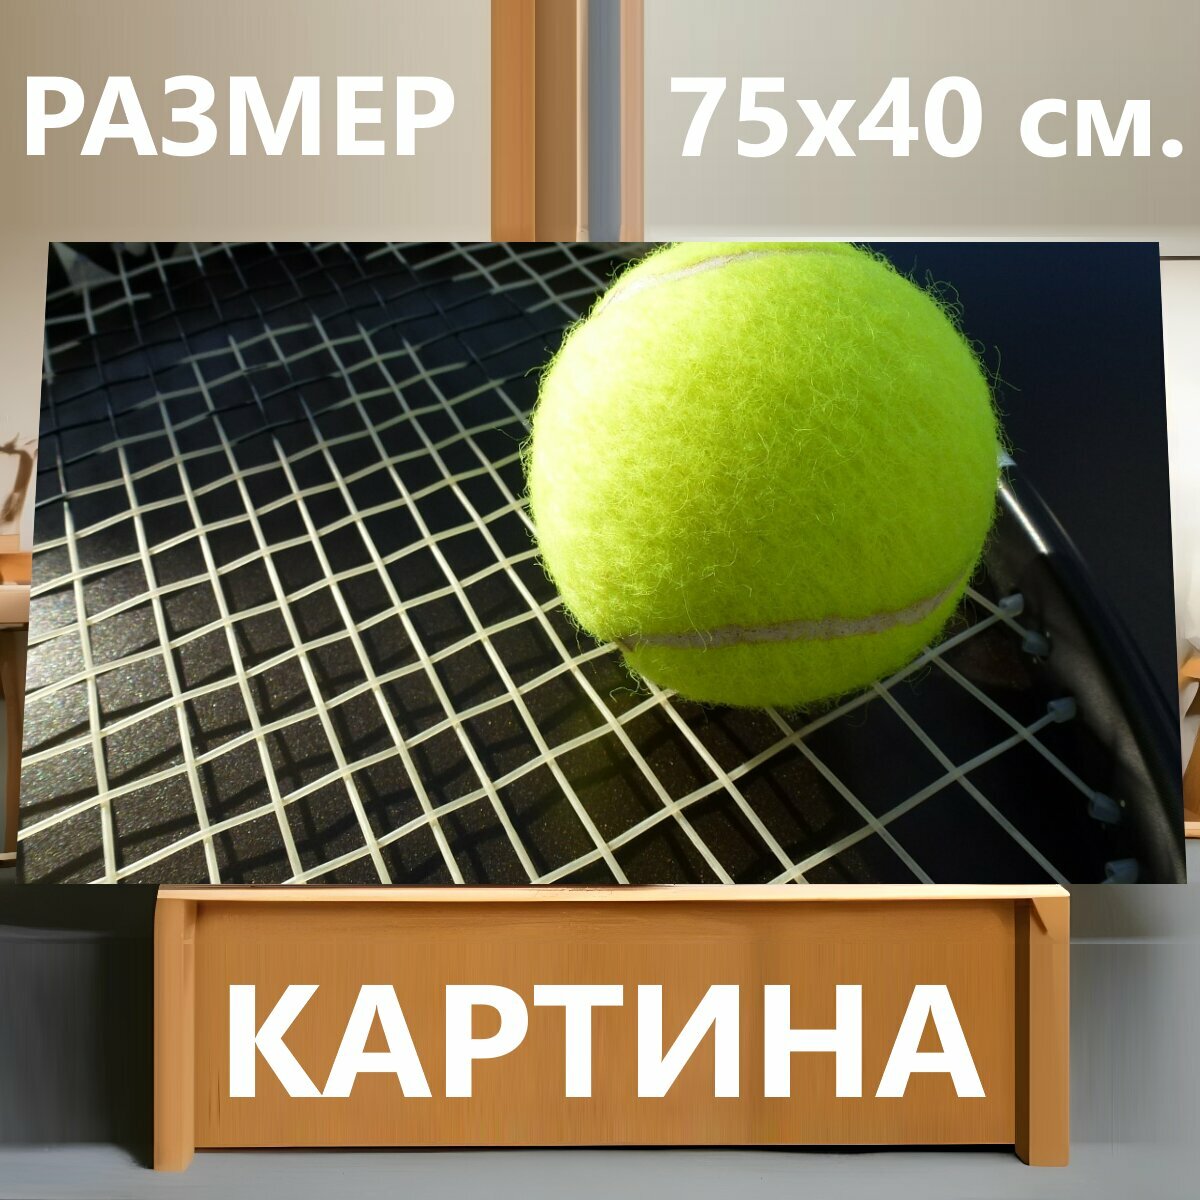 Картина на холсте "Теннис, теннисный мяч, теннисная ракетка" на подрамнике 75х40 см. для интерьера